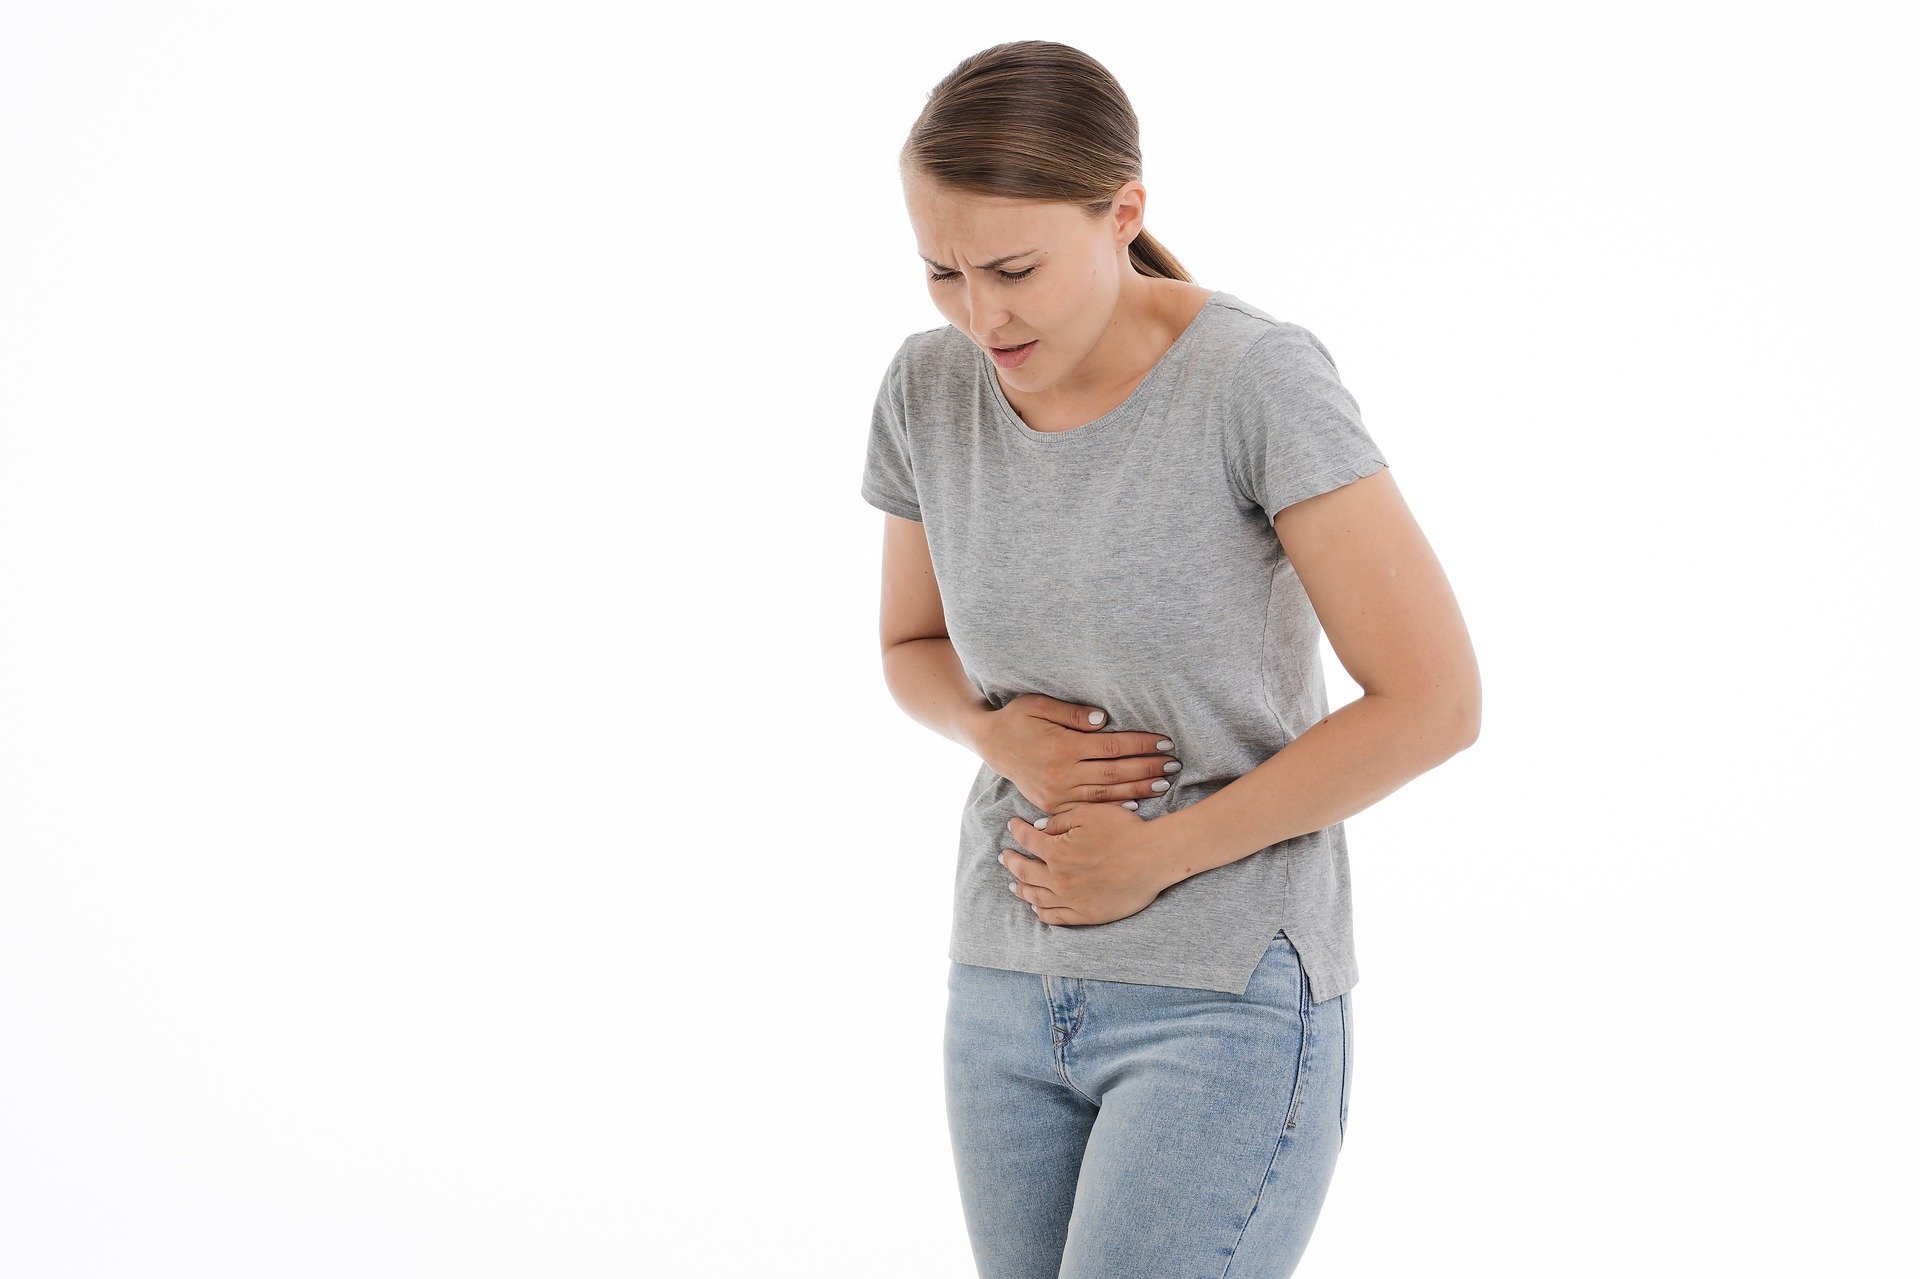 Șase semne că poți suferi de o boală gastrică gravă! Gastroenterolog: Atenție la aceste probleme aparent banale